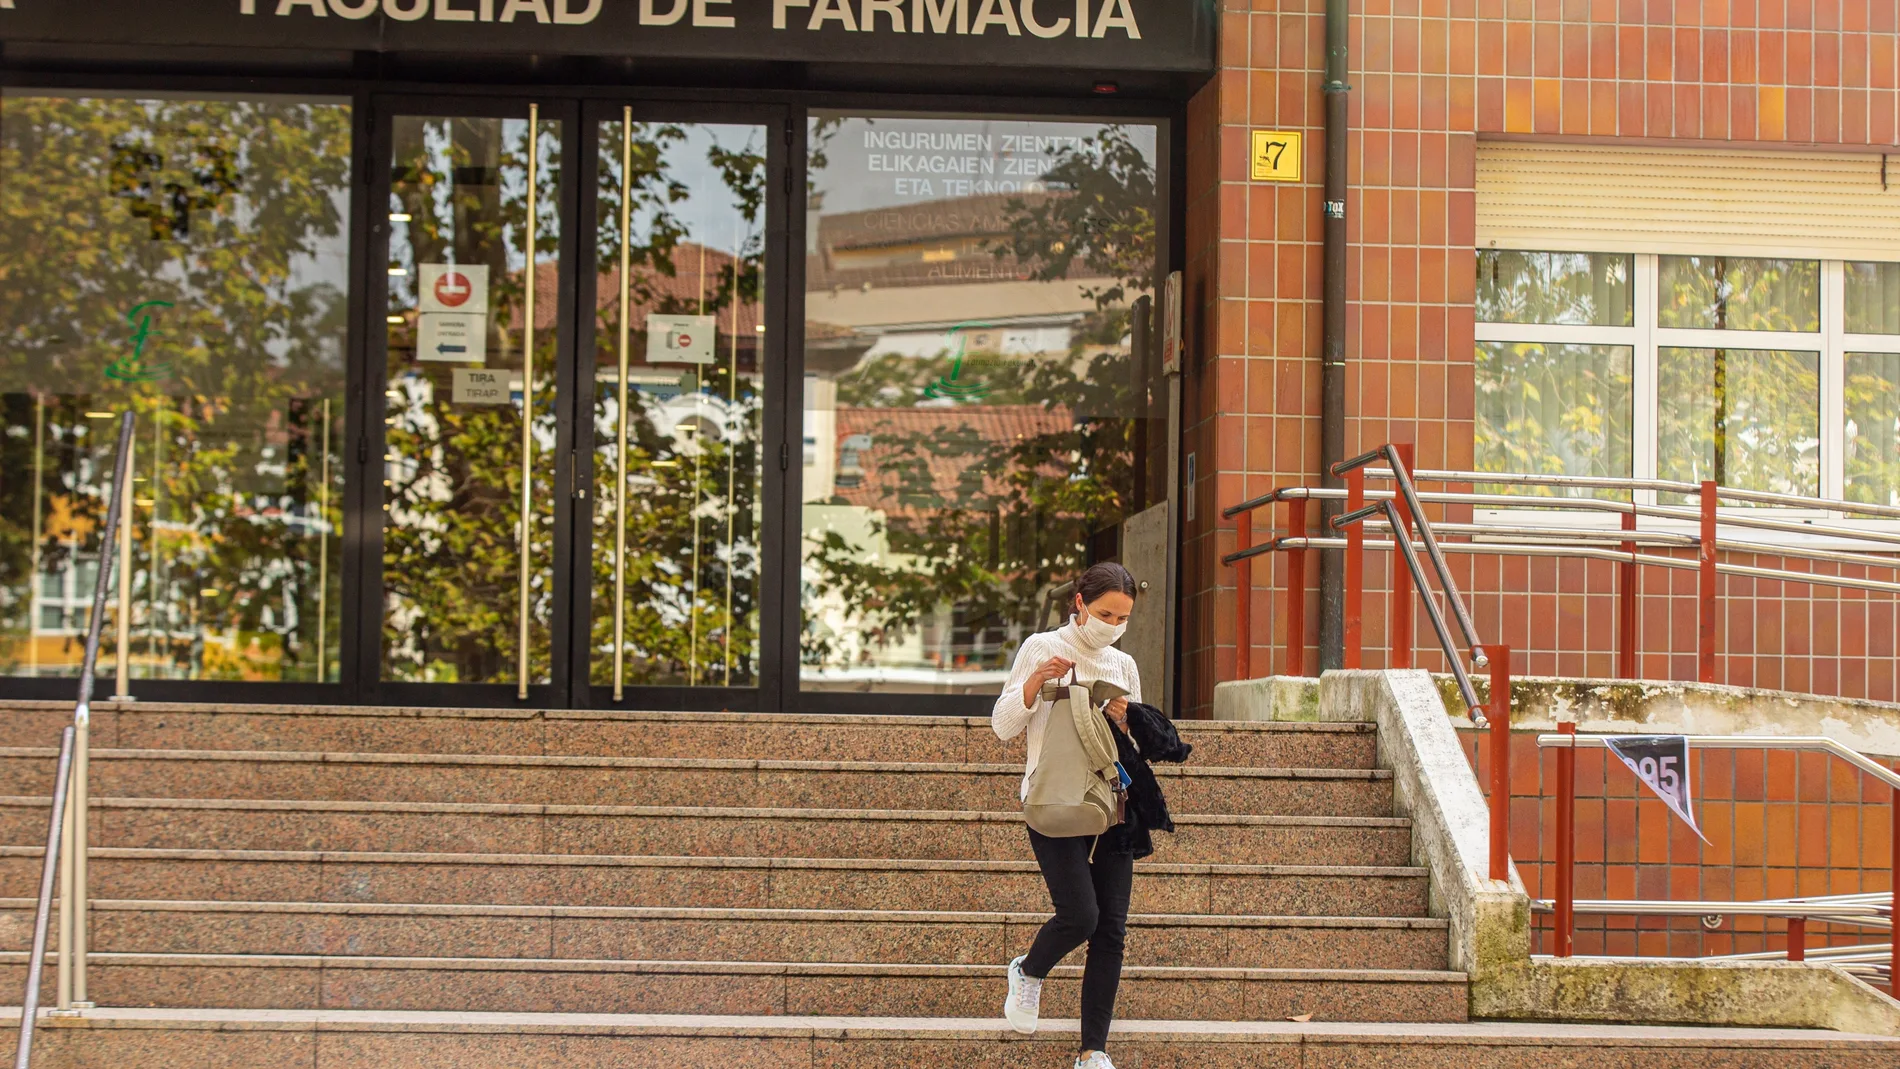 Una clase de la facultad de Farmacia de la Universidad del País Vasco (UPV/EHU)